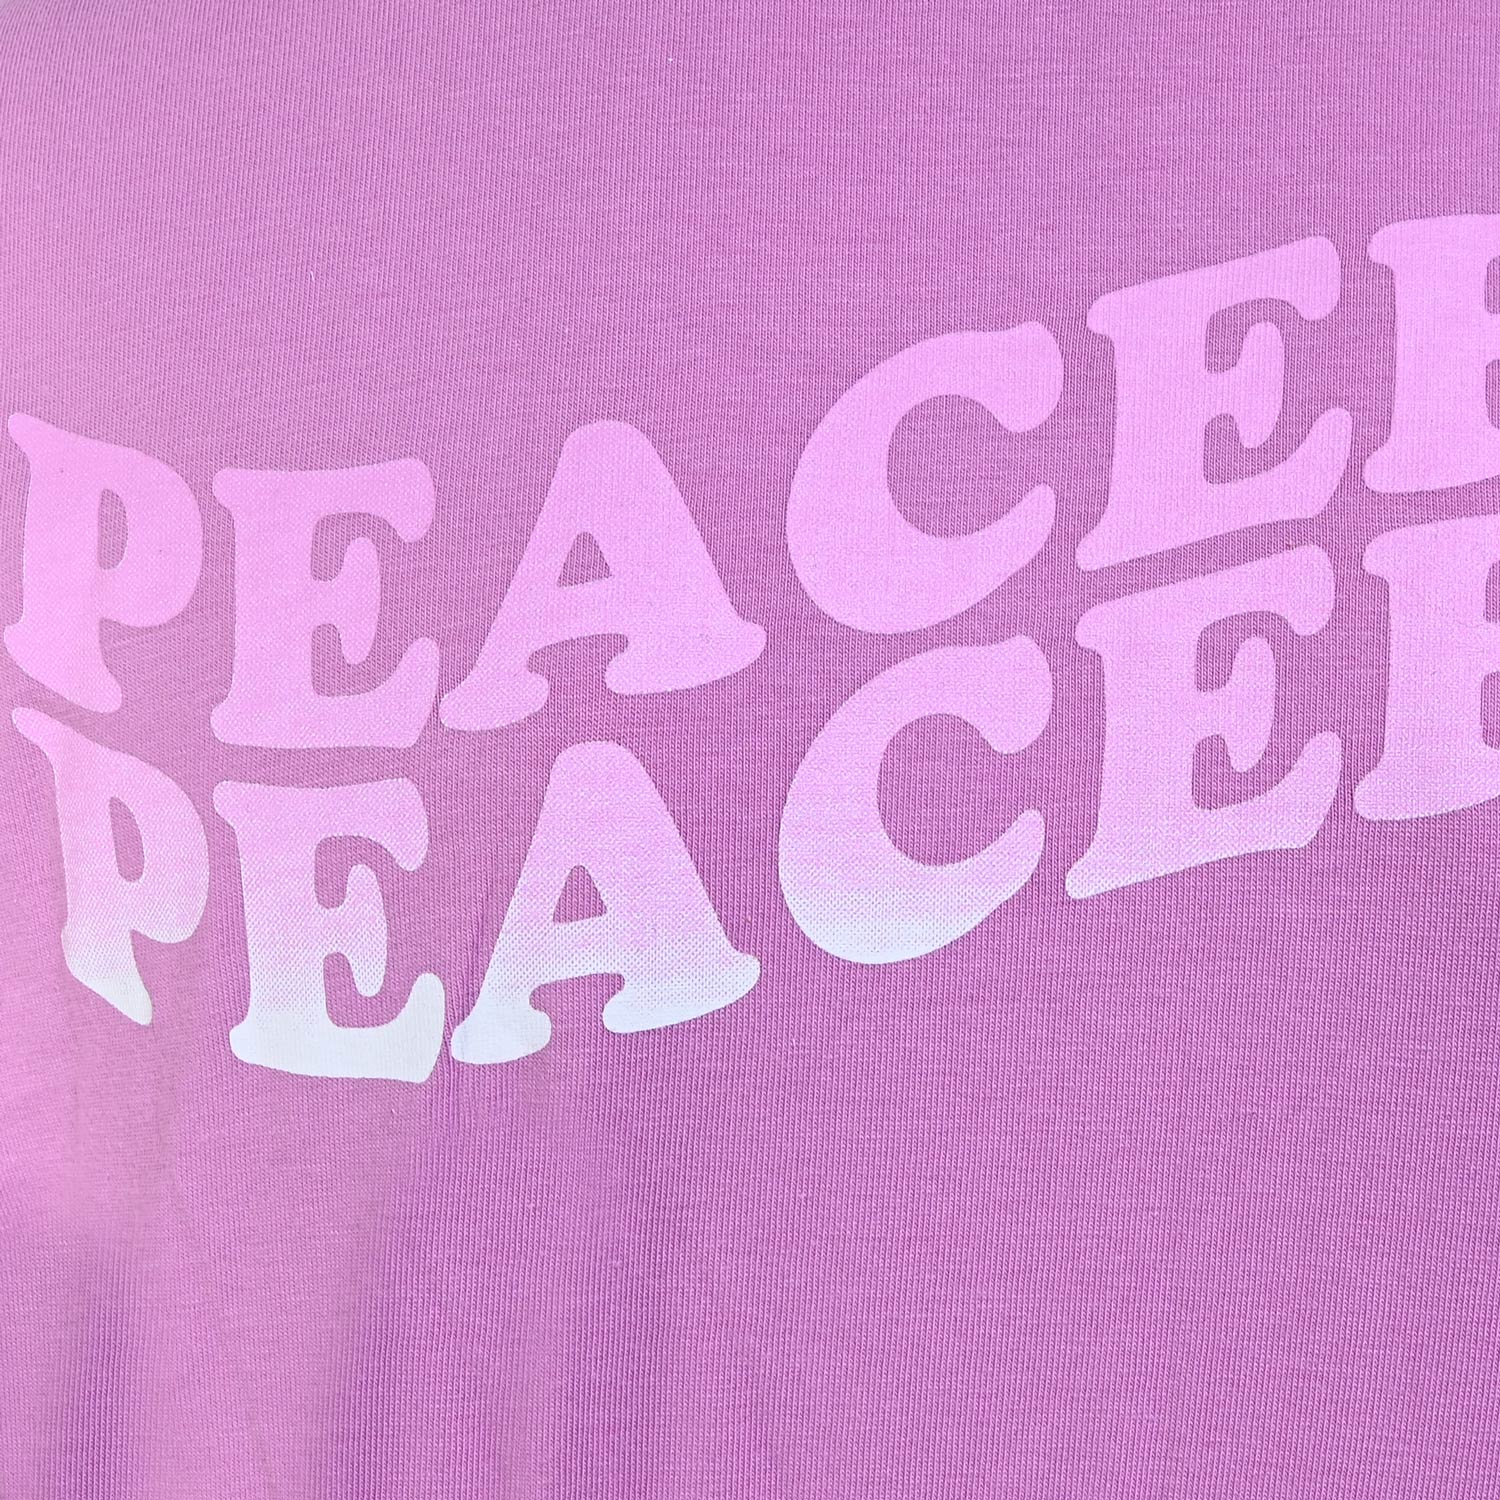 5955-Girls Boxy T-Shirt -Peaceful